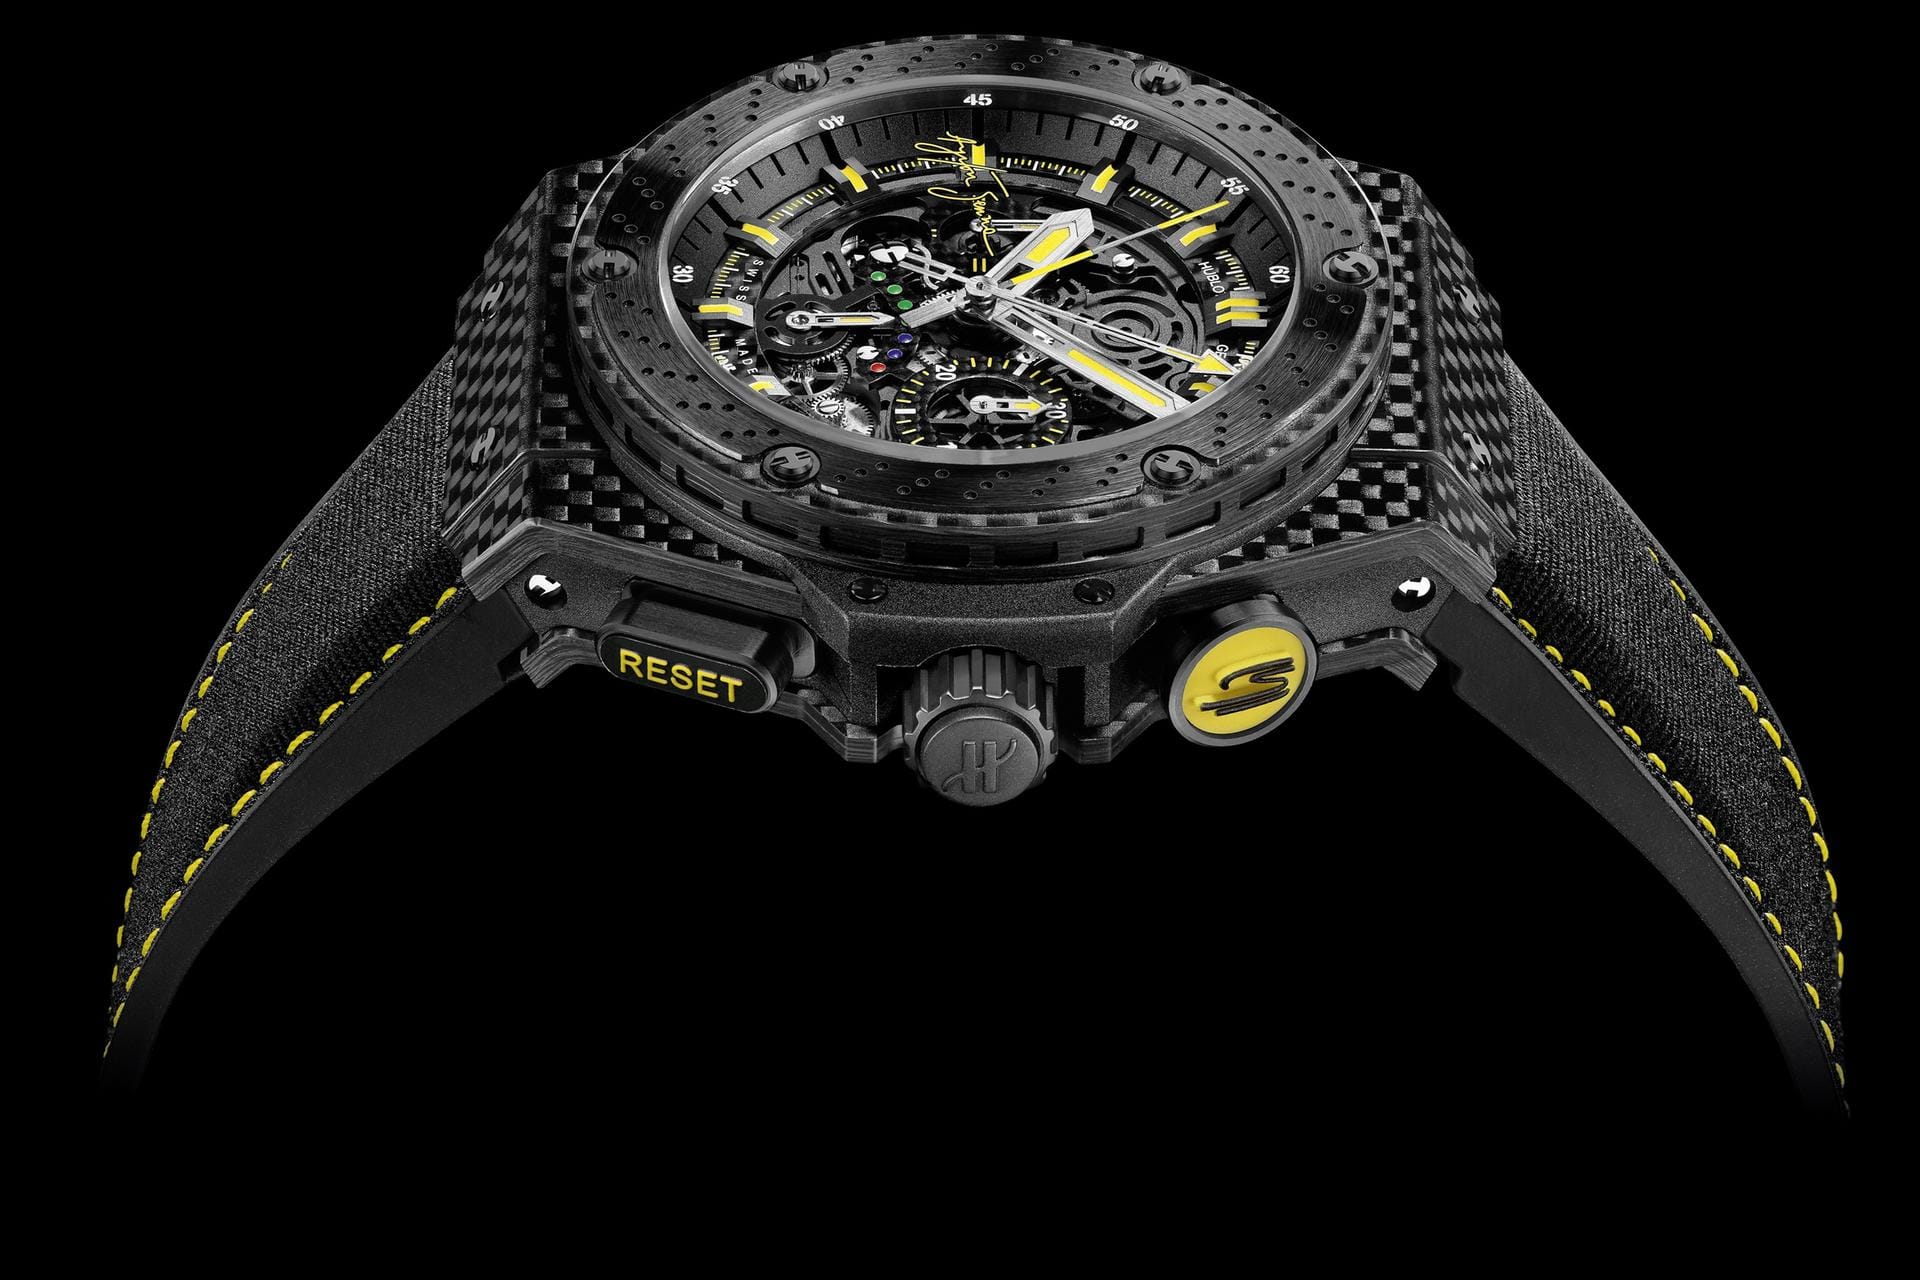 Edle Uhr aus Carbon: Bei der Hublot Big Bang Carbon bestehen Gehäuse, Lünette und Zifferblatt aus eigens gefertigtem CFK. Die Uhr kostet etwa 14.500 Euro.